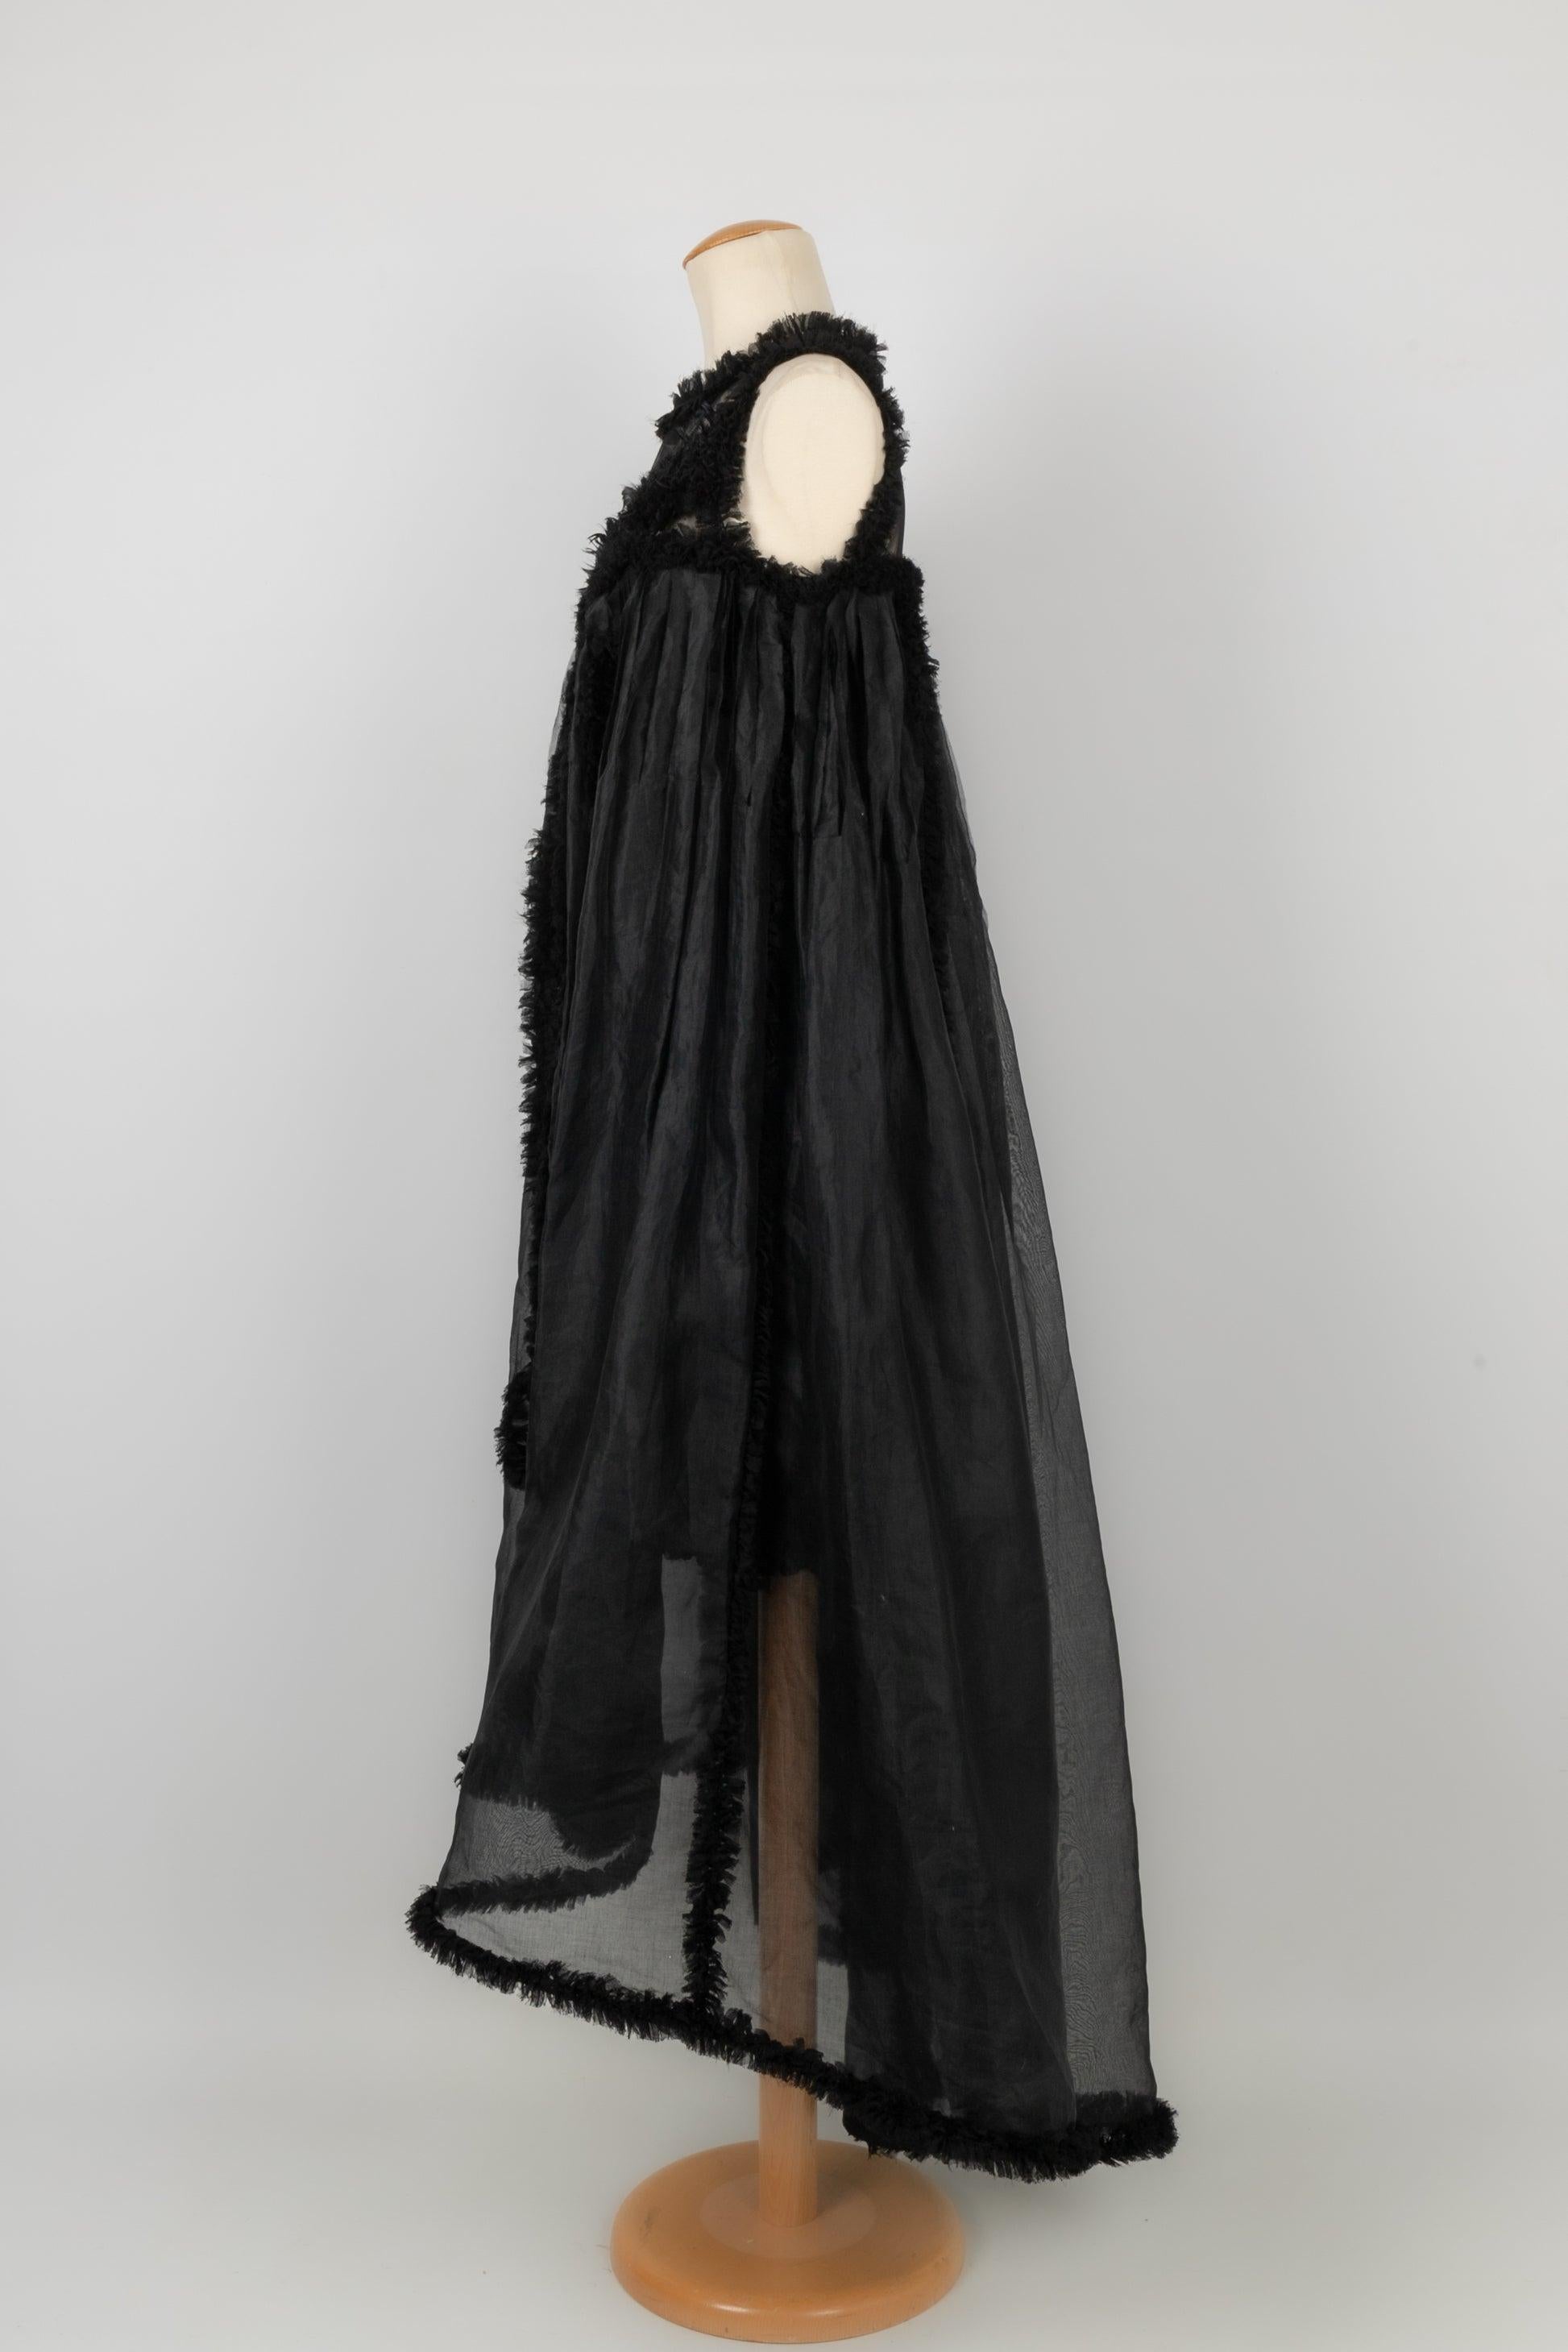 Chanel - (Fabriqué en France) Robe noire en taffetas de soie cousue de plumes et fendue en deux côtés sur le devant, s'ouvrant sur une robe plus courte. Taille 36FR.
Collection Prêt-à-Porter Printemps-Eté 2011 sous la direction de Karl Lagerfeld.